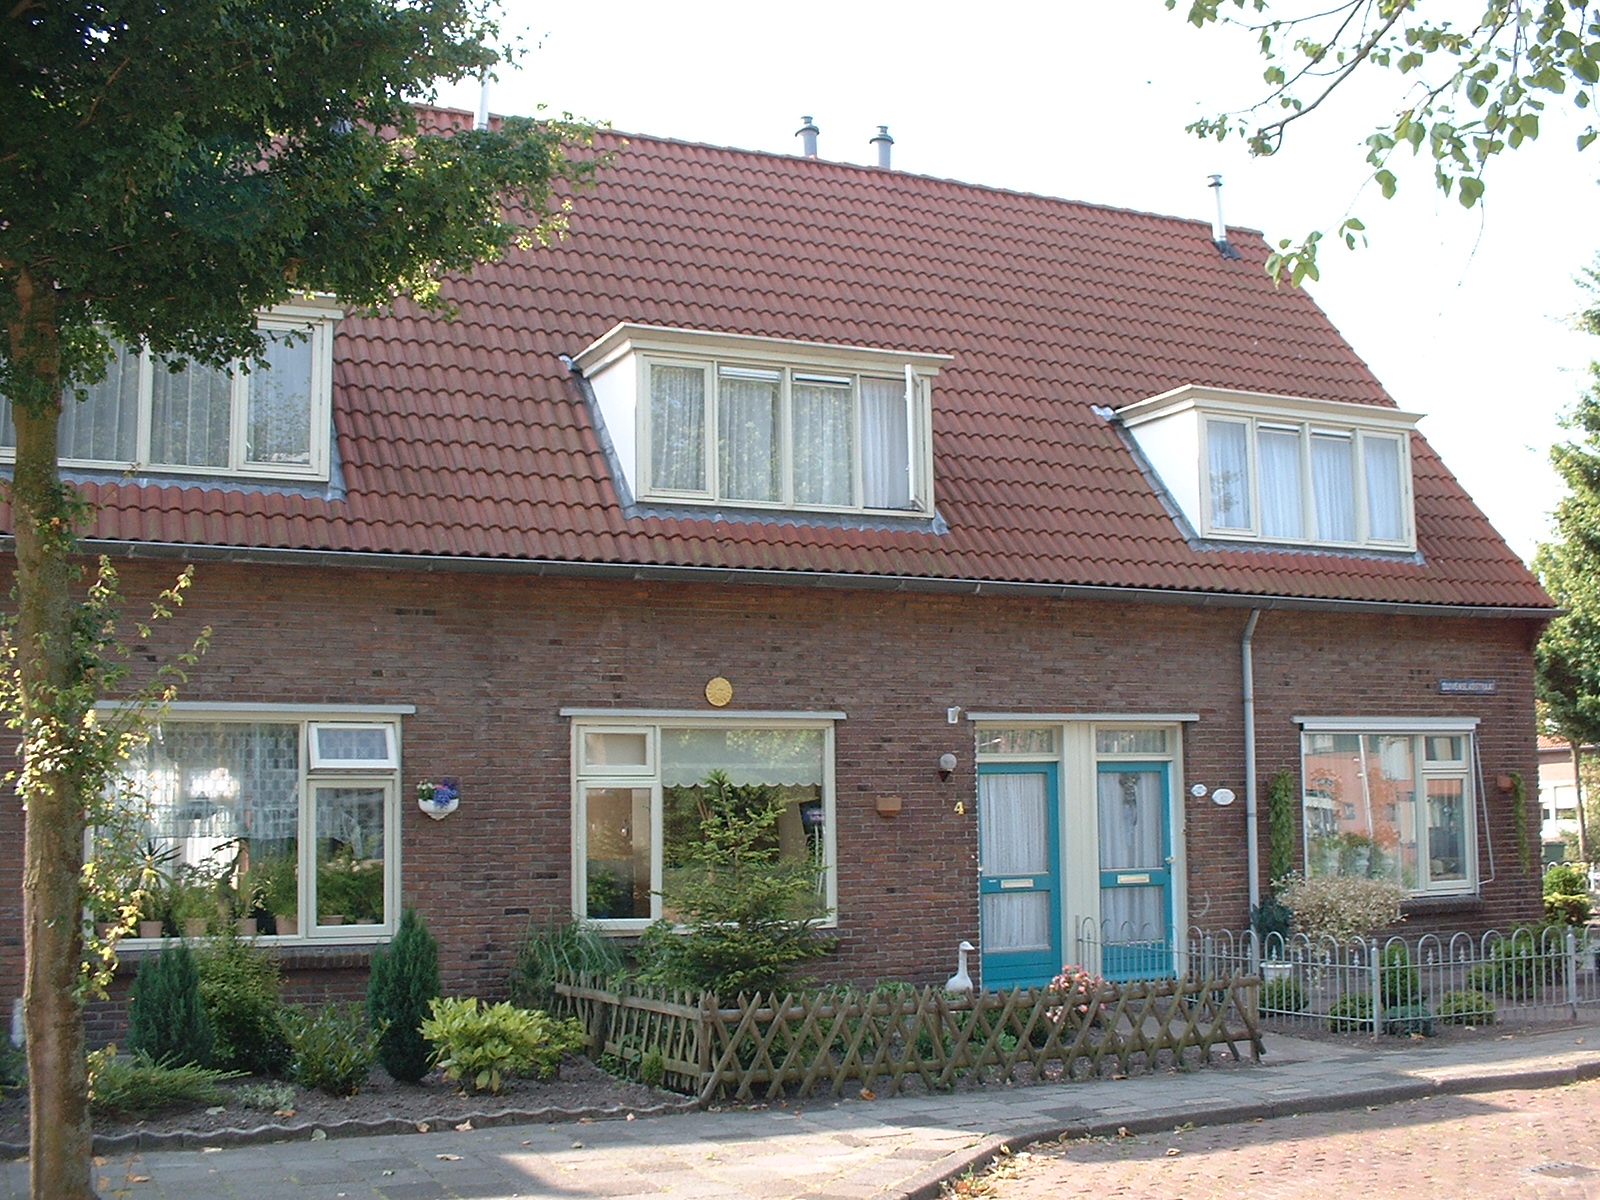 Duivenslagstraat 4, 7906 BK Hoogeveen, Nederland